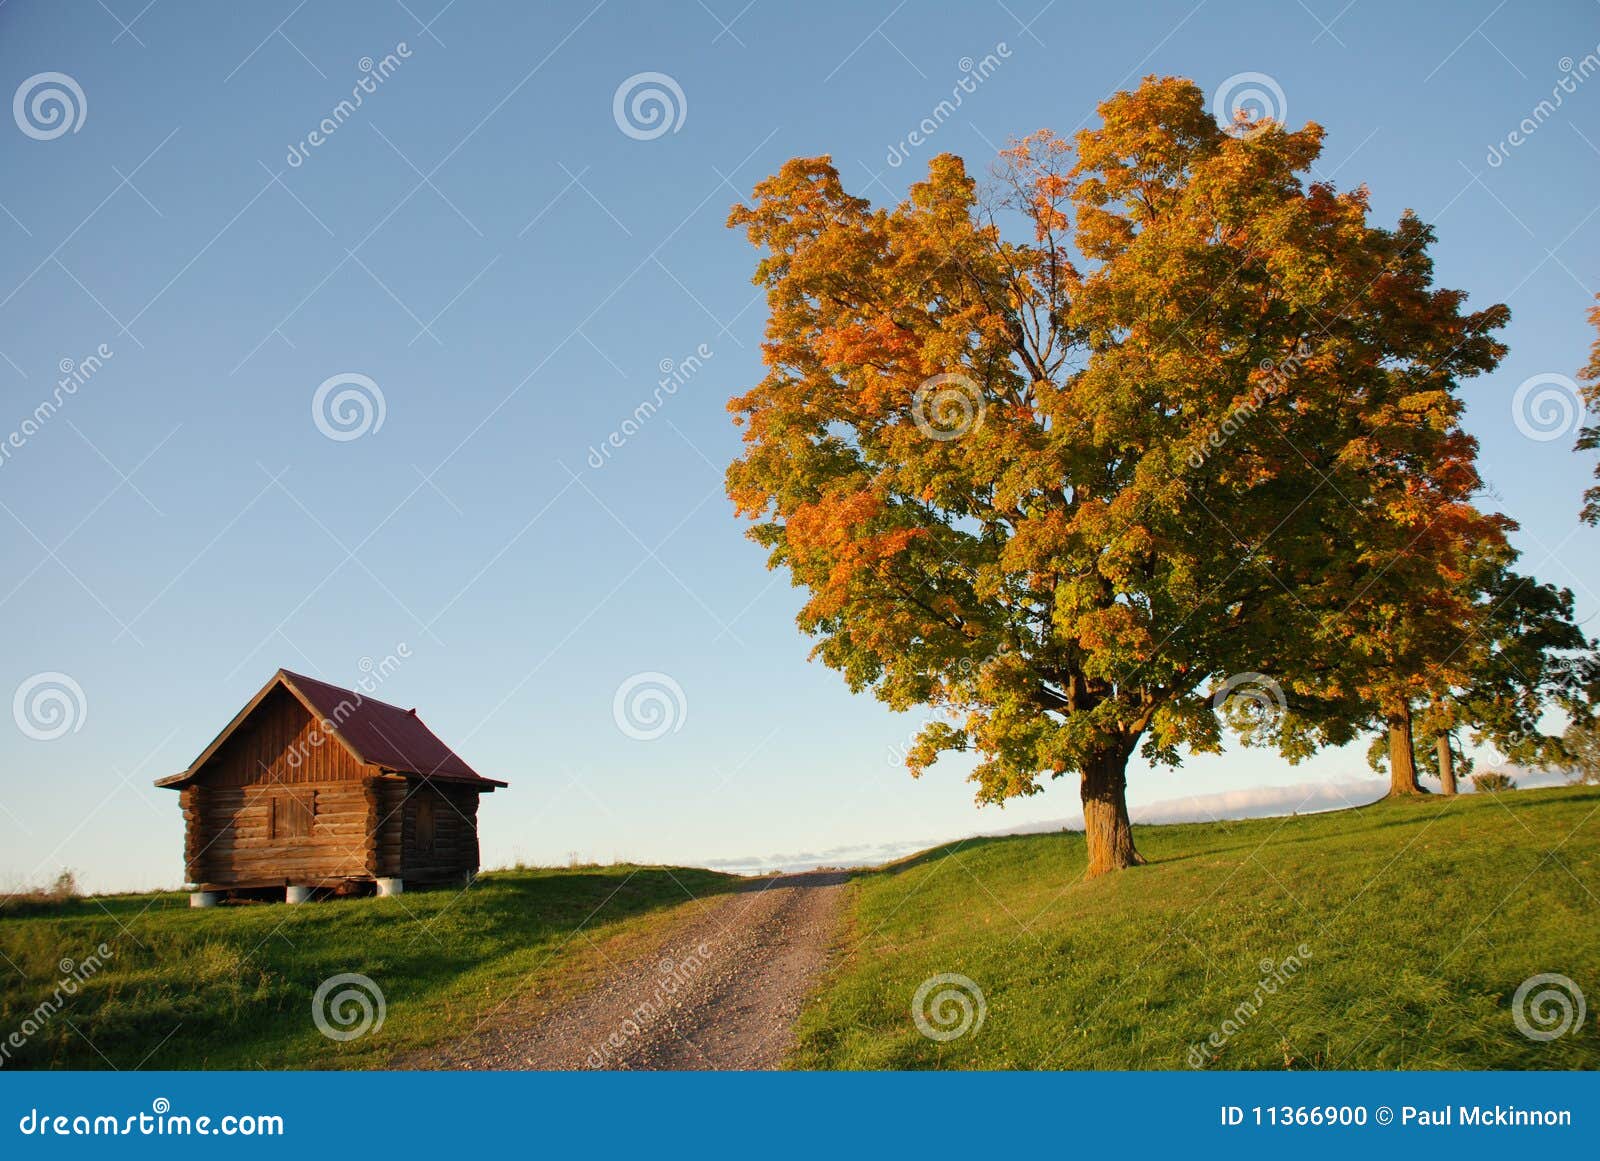 Cabina ed albero, catturati vicino al tramonto in autunno. La cabina e l'albero hanno separato da una strada non asfaltata. Catturato vicino al tramonto in autunno